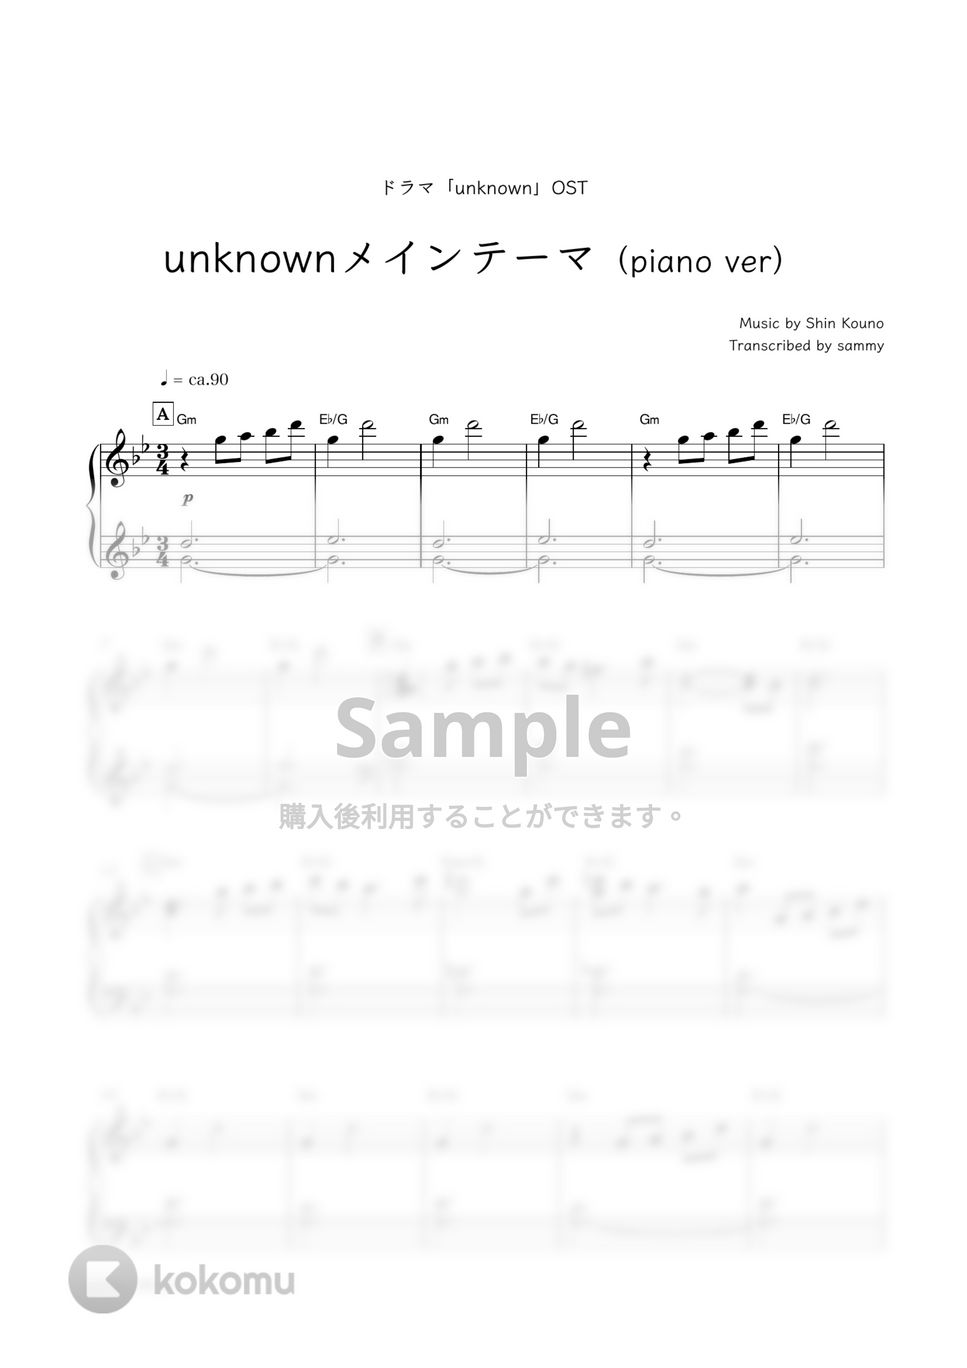 ドラマ『unknown』OST - unknownメインテーマ (piano ver) by sammy